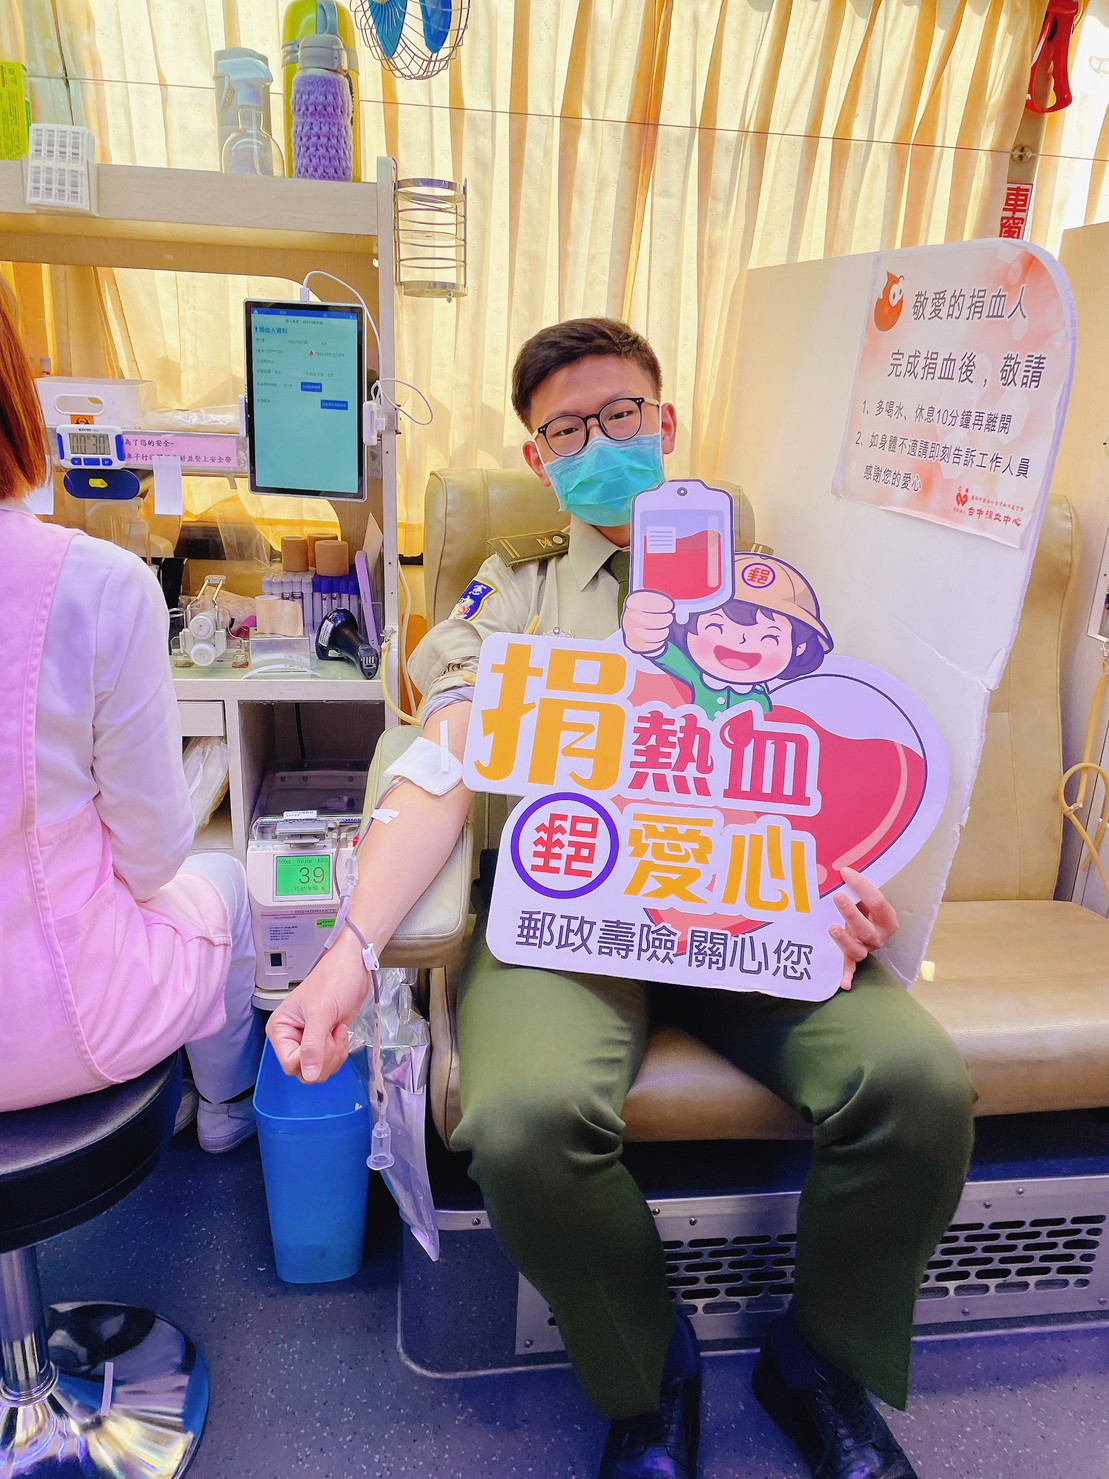 3月-臺中郵局與台中捐血中心聯合辦理 「捐熱血 郵愛心」公益活動